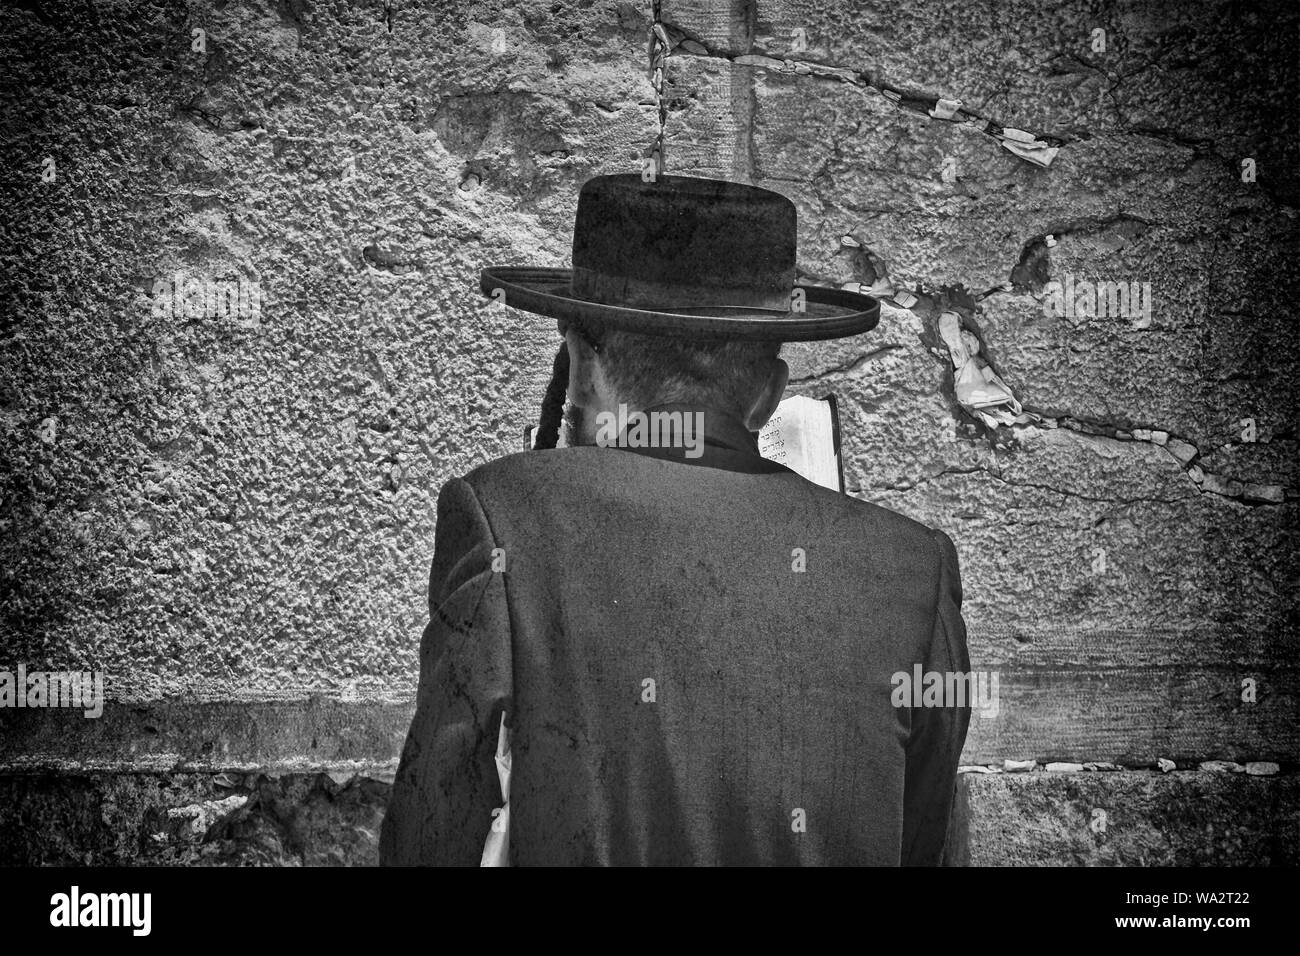 Orthodox Jew praying at the Wailing Wall, Jerusalem Stock Photo